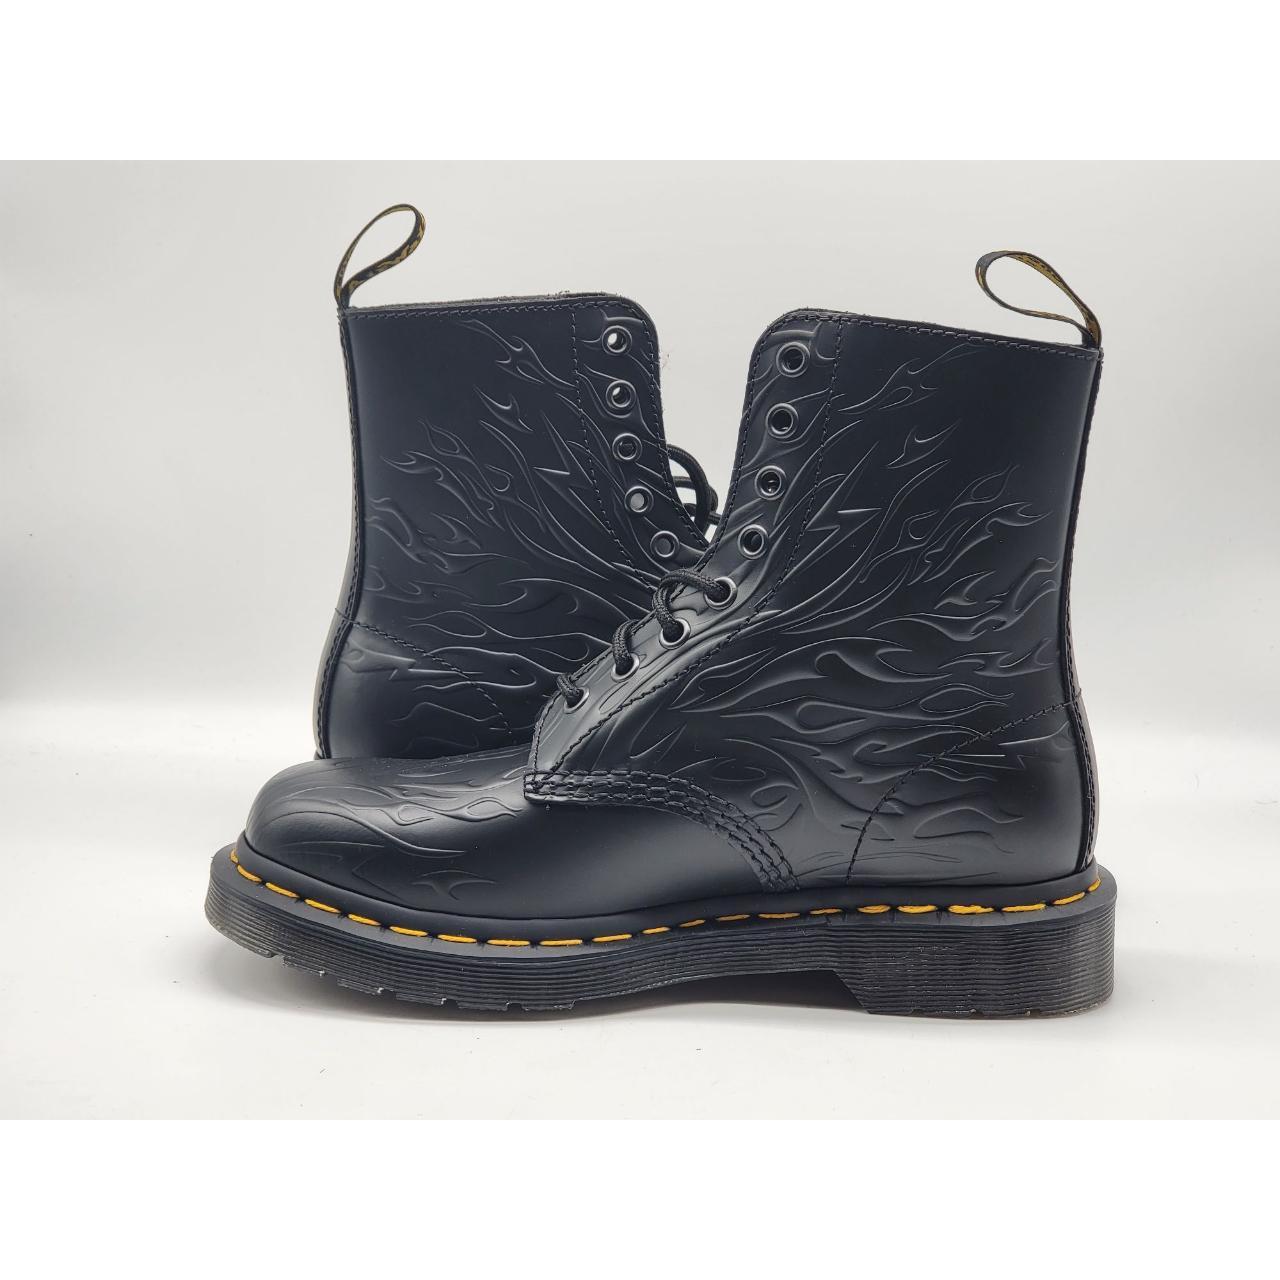 Dr Martens Black Flames Boots Size 6 Brand: Dr... - Depop